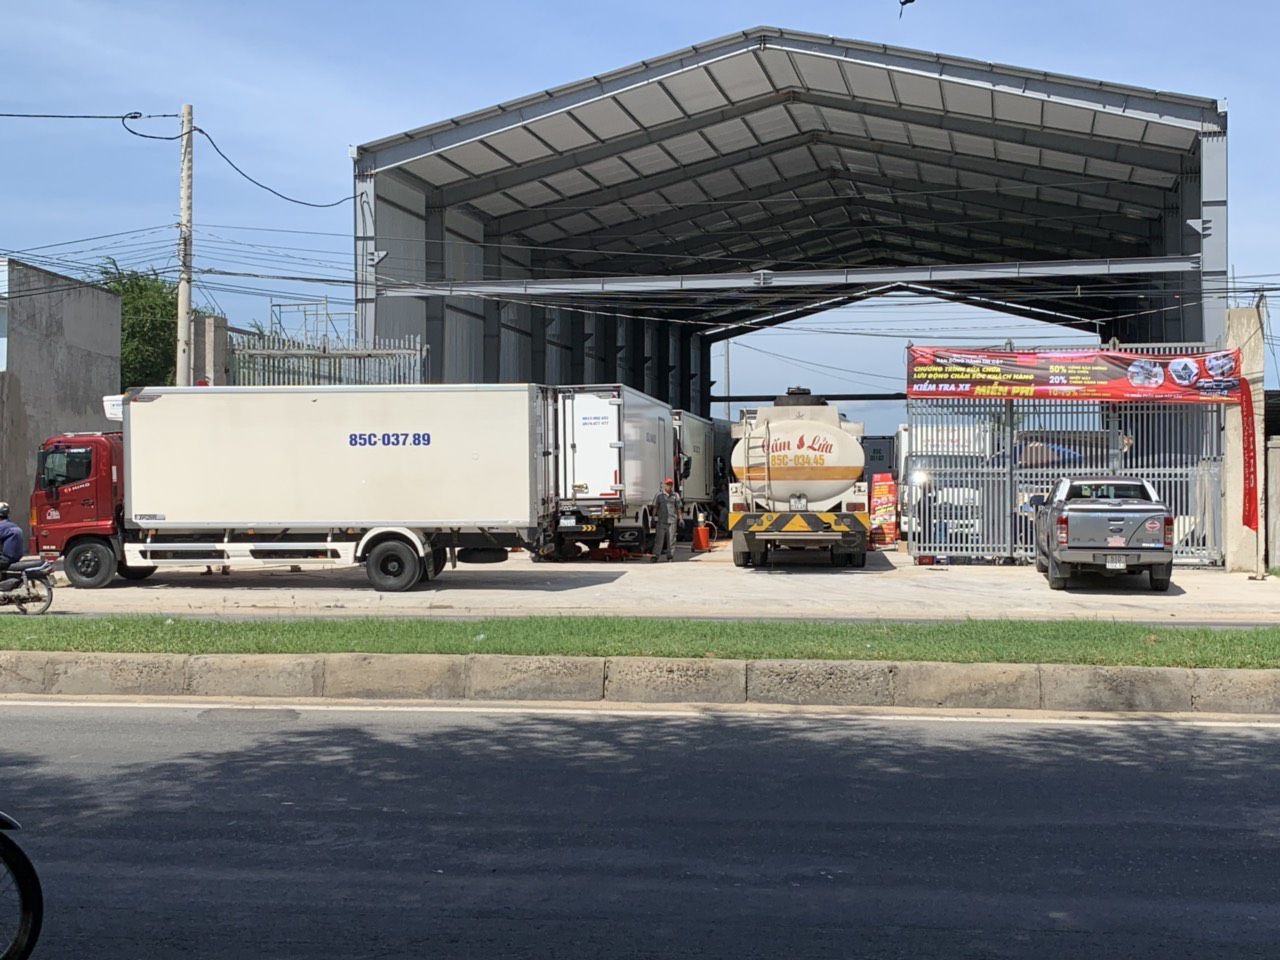 Chương trình sửa chữa lưu động chăm sóc khách hàng Hino Đại Phát Tín chính thức khởi động tại Ninh Thuận